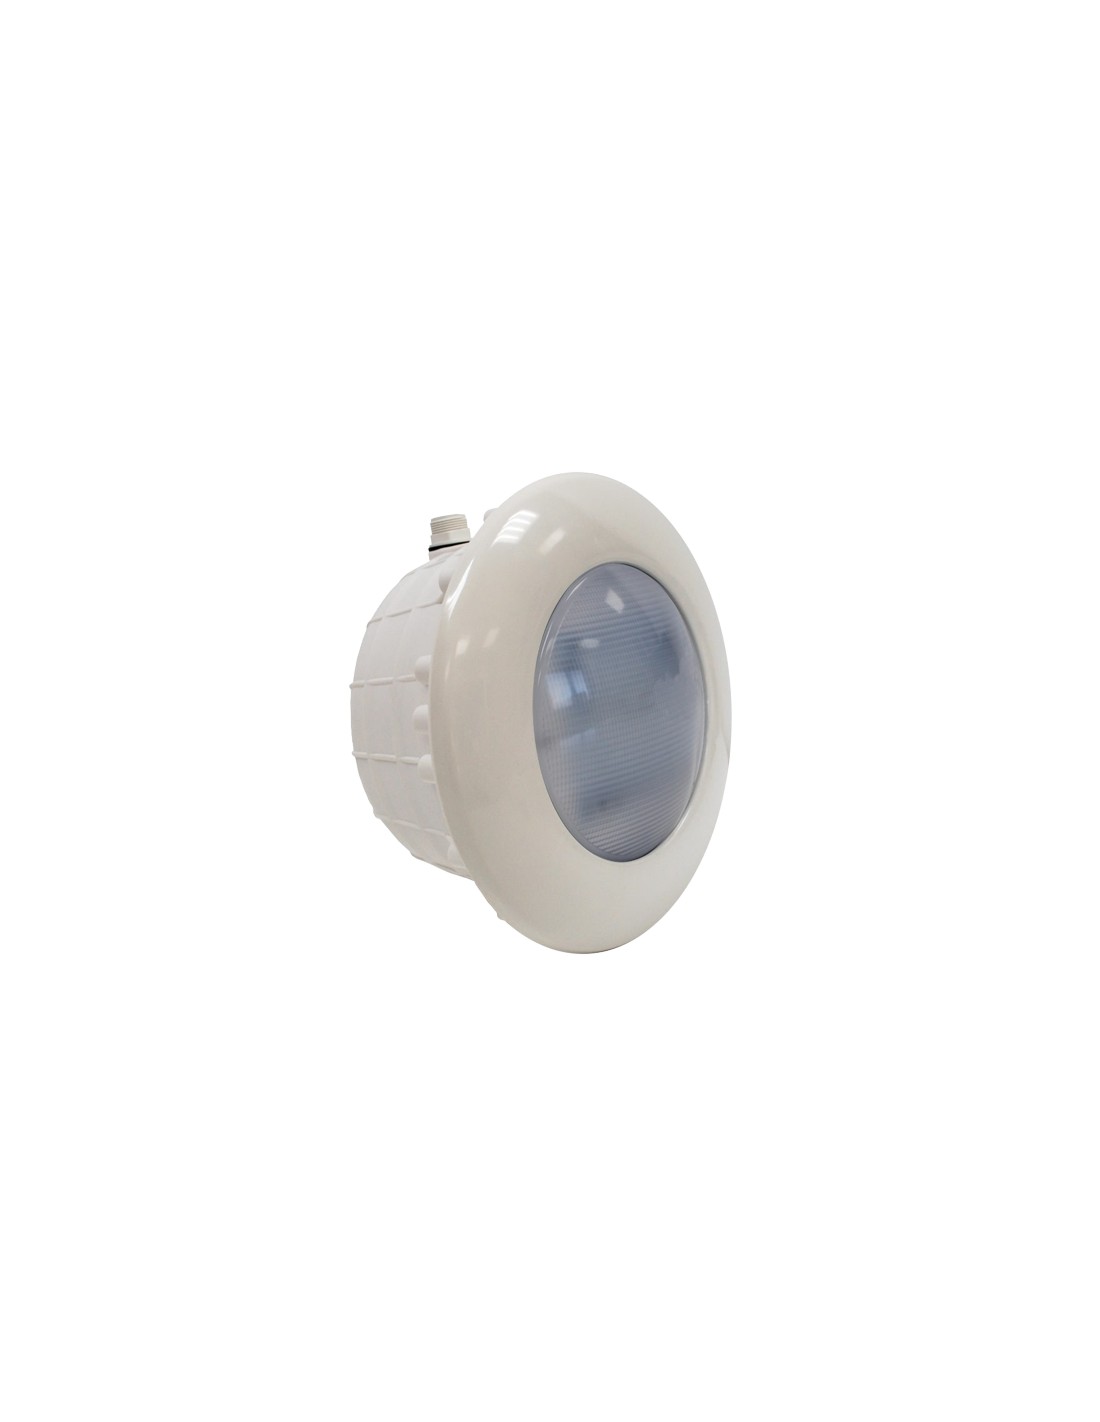 Projecteur LED blanche EasyLine Beige PAR56 16W pour Piscine